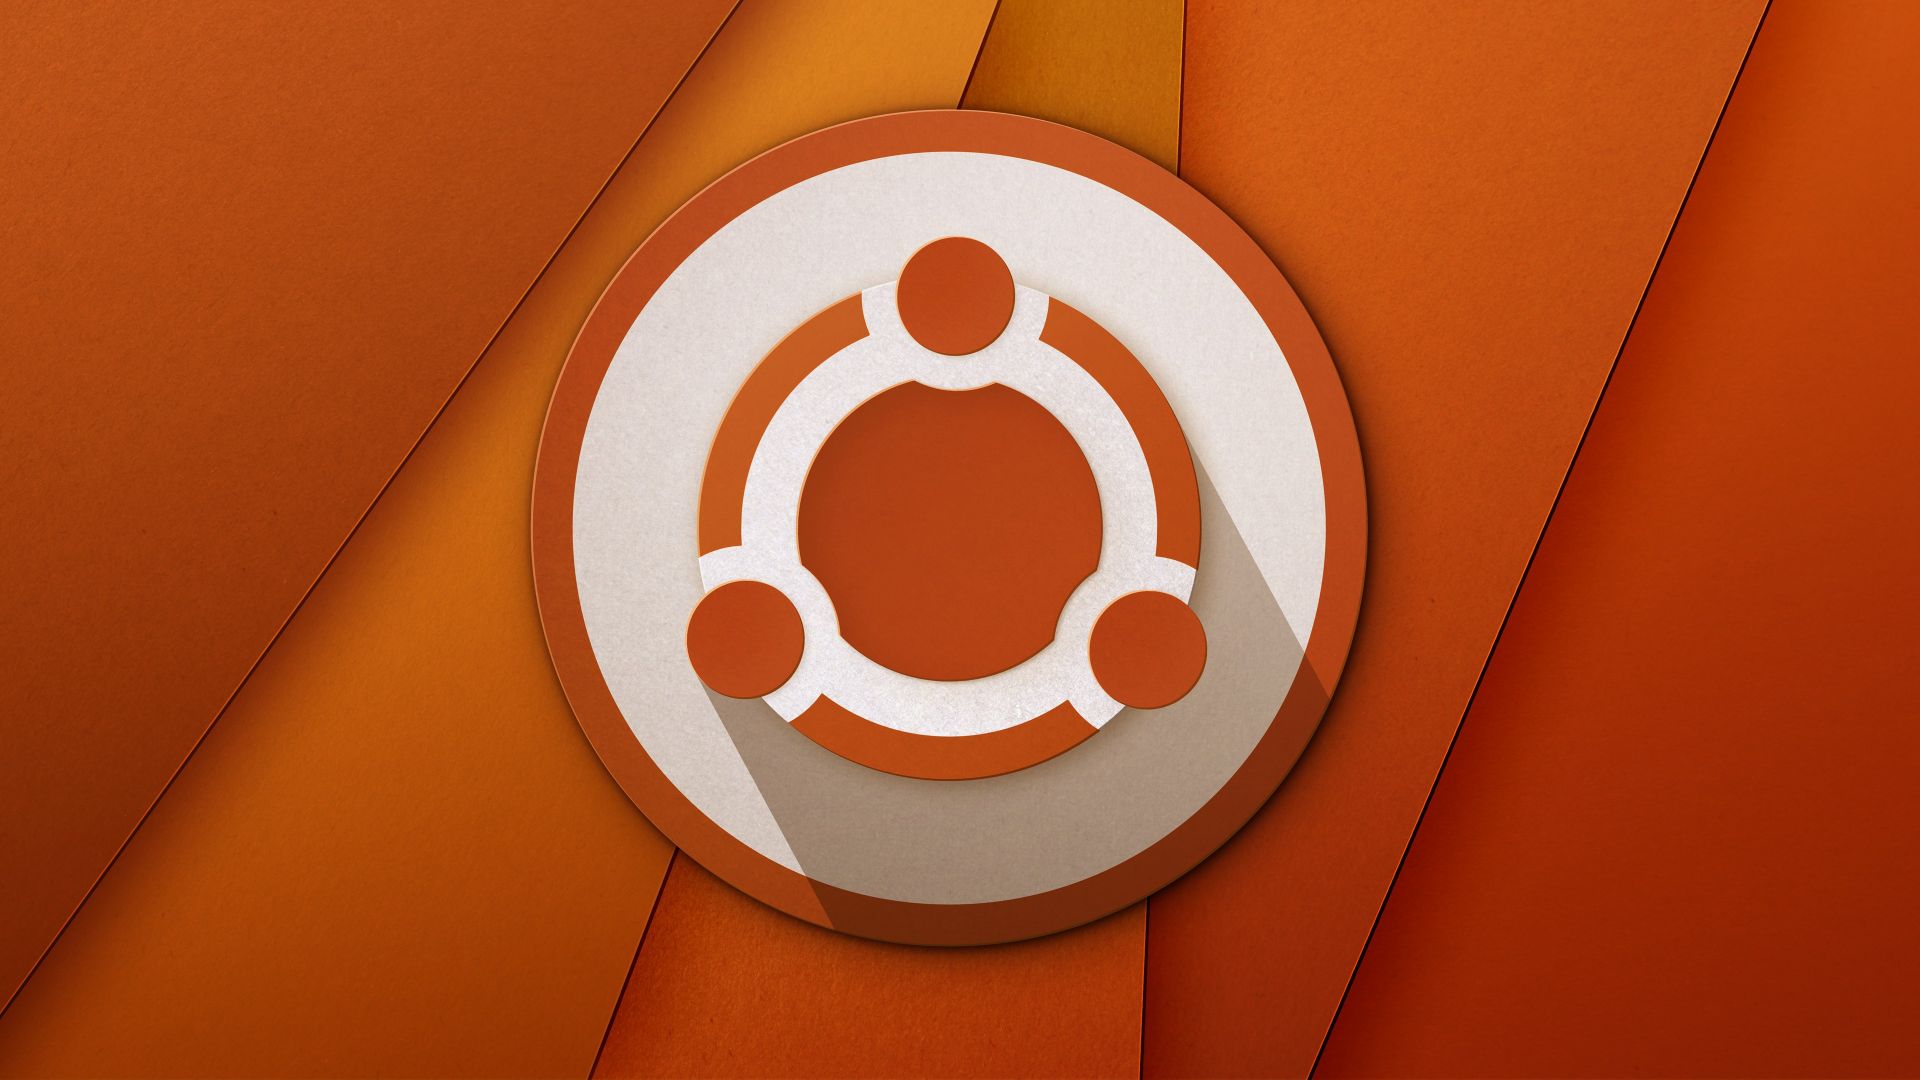 Wallpaper Ubuntu logo material design